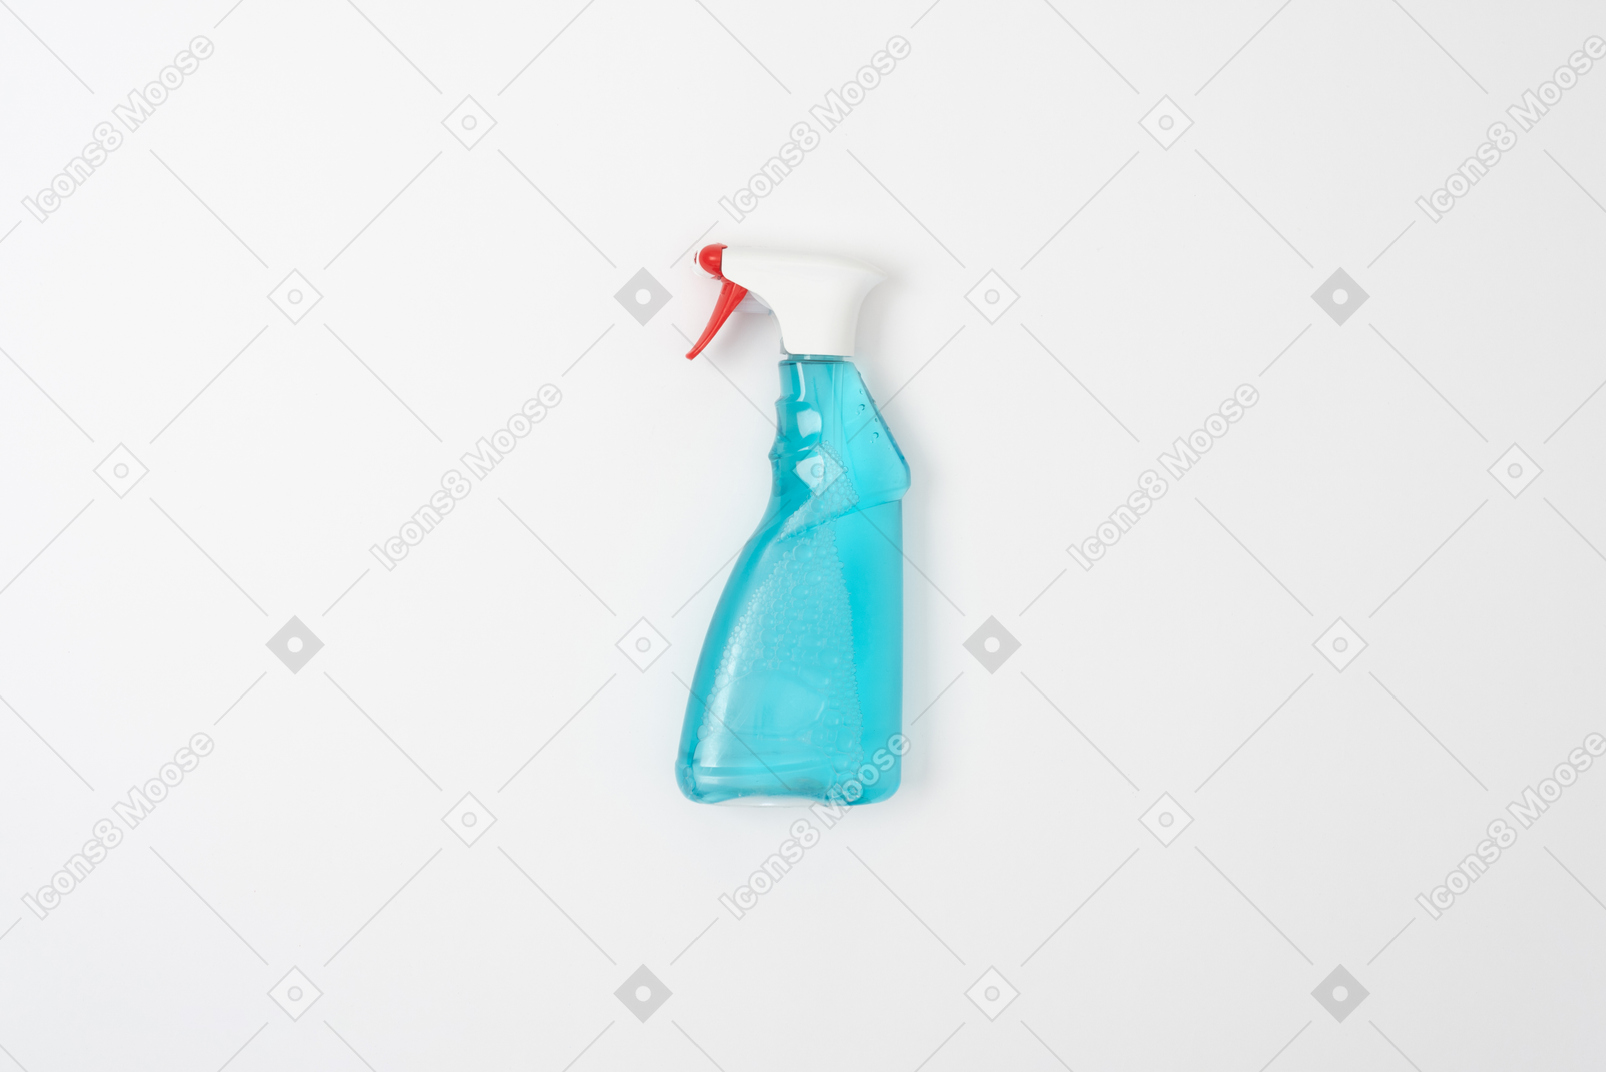 Glass cleaner spray bottle